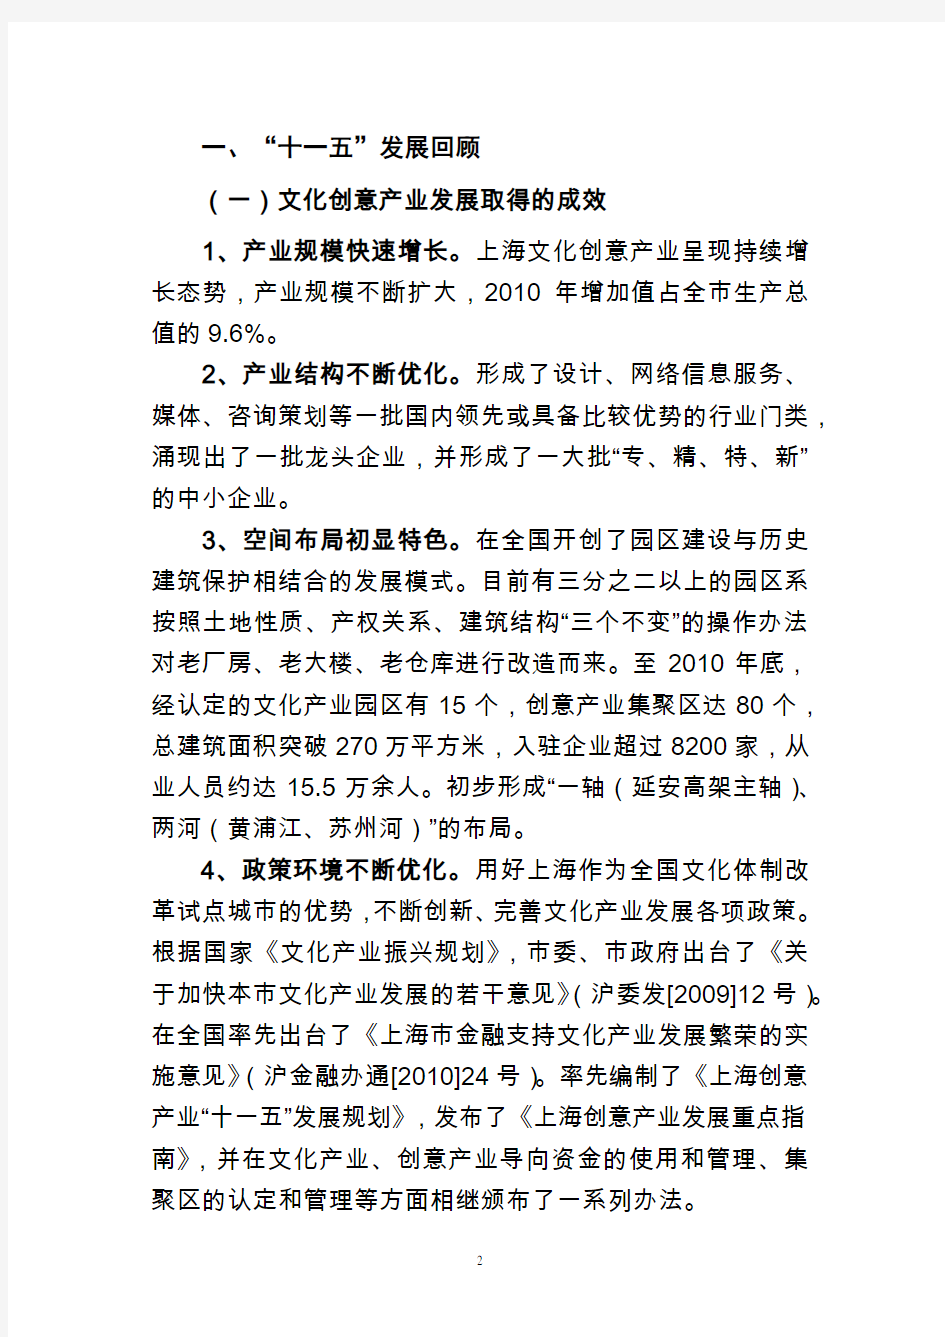 上海市文化创意产业发展十二五规划(修订版)